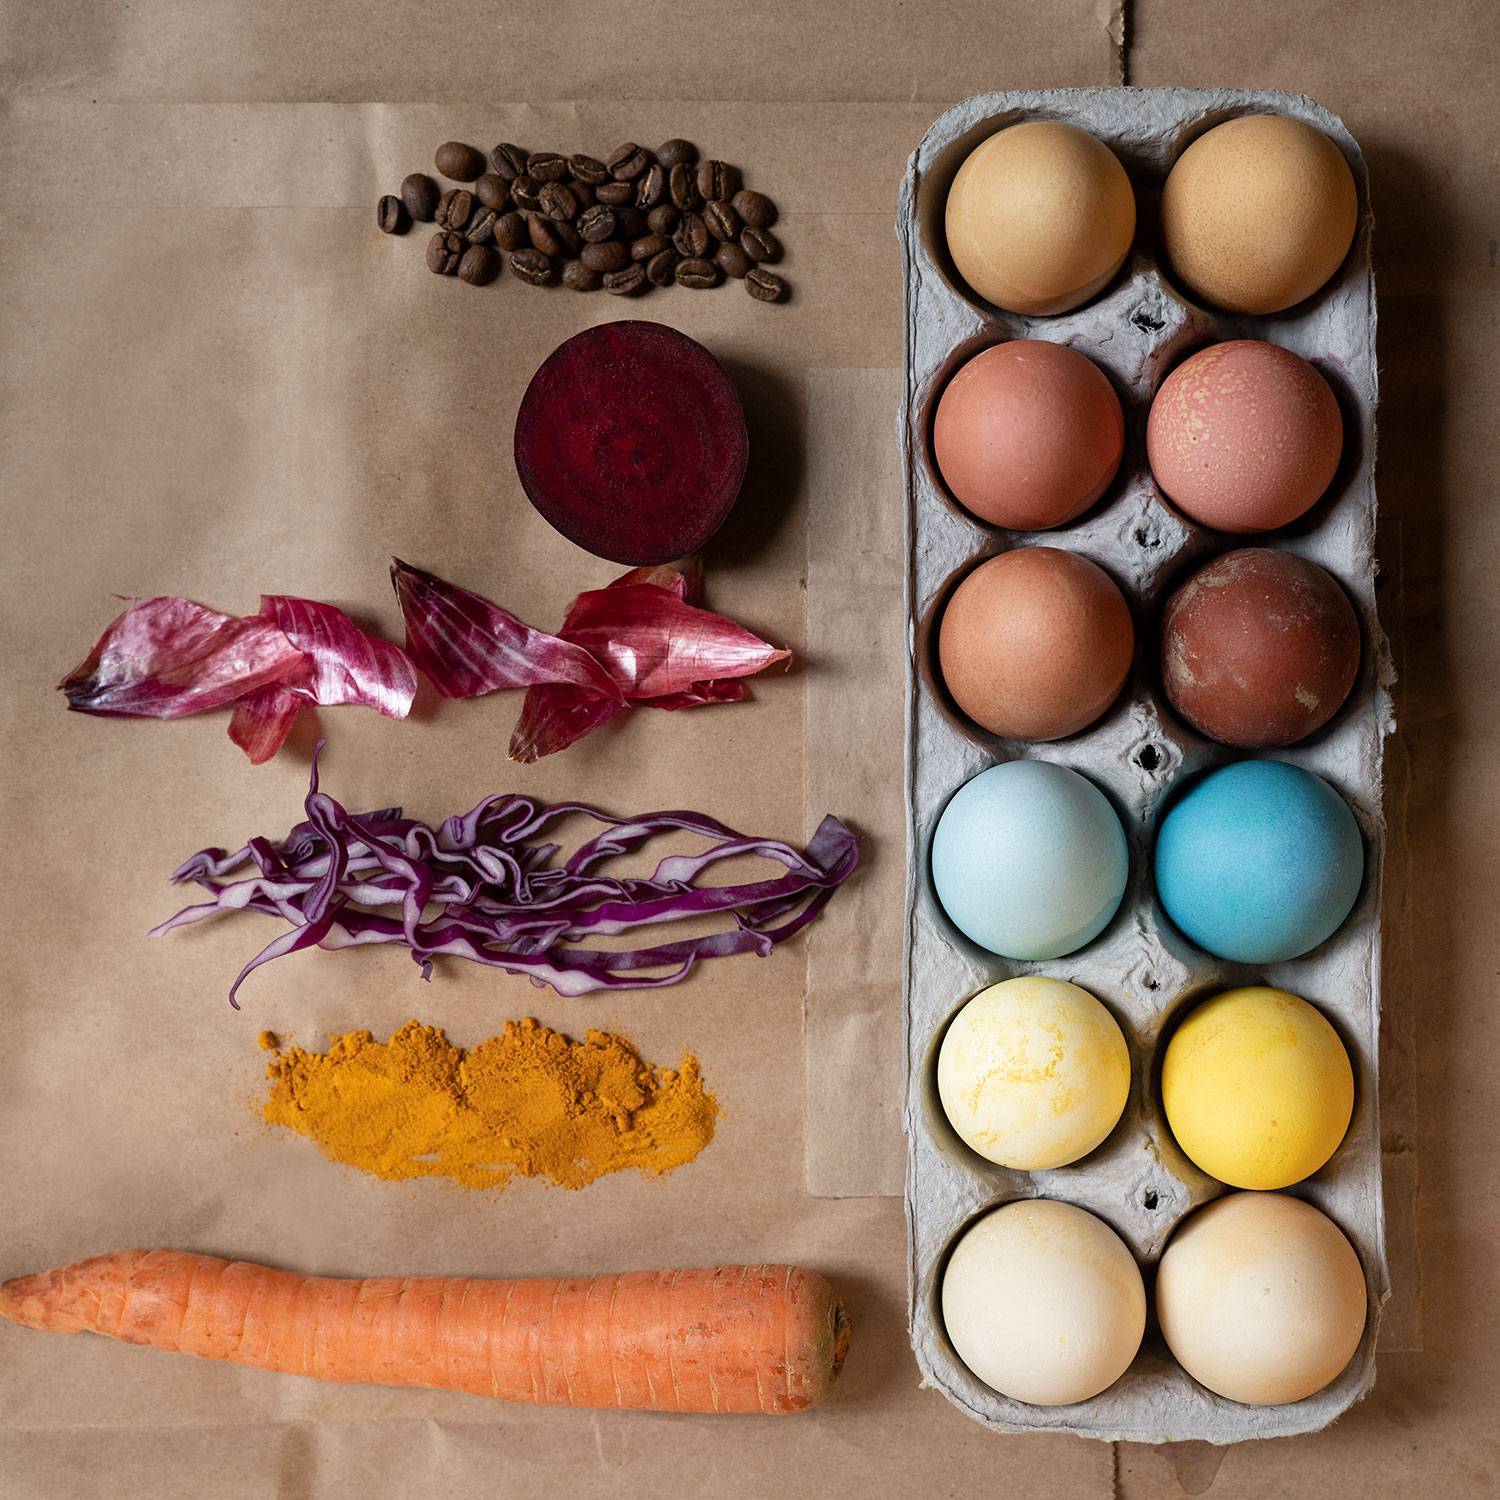 Как красиво покрасить и украсить яйца на пасху 2021 своими руками: оригинальные способы и полезные советы